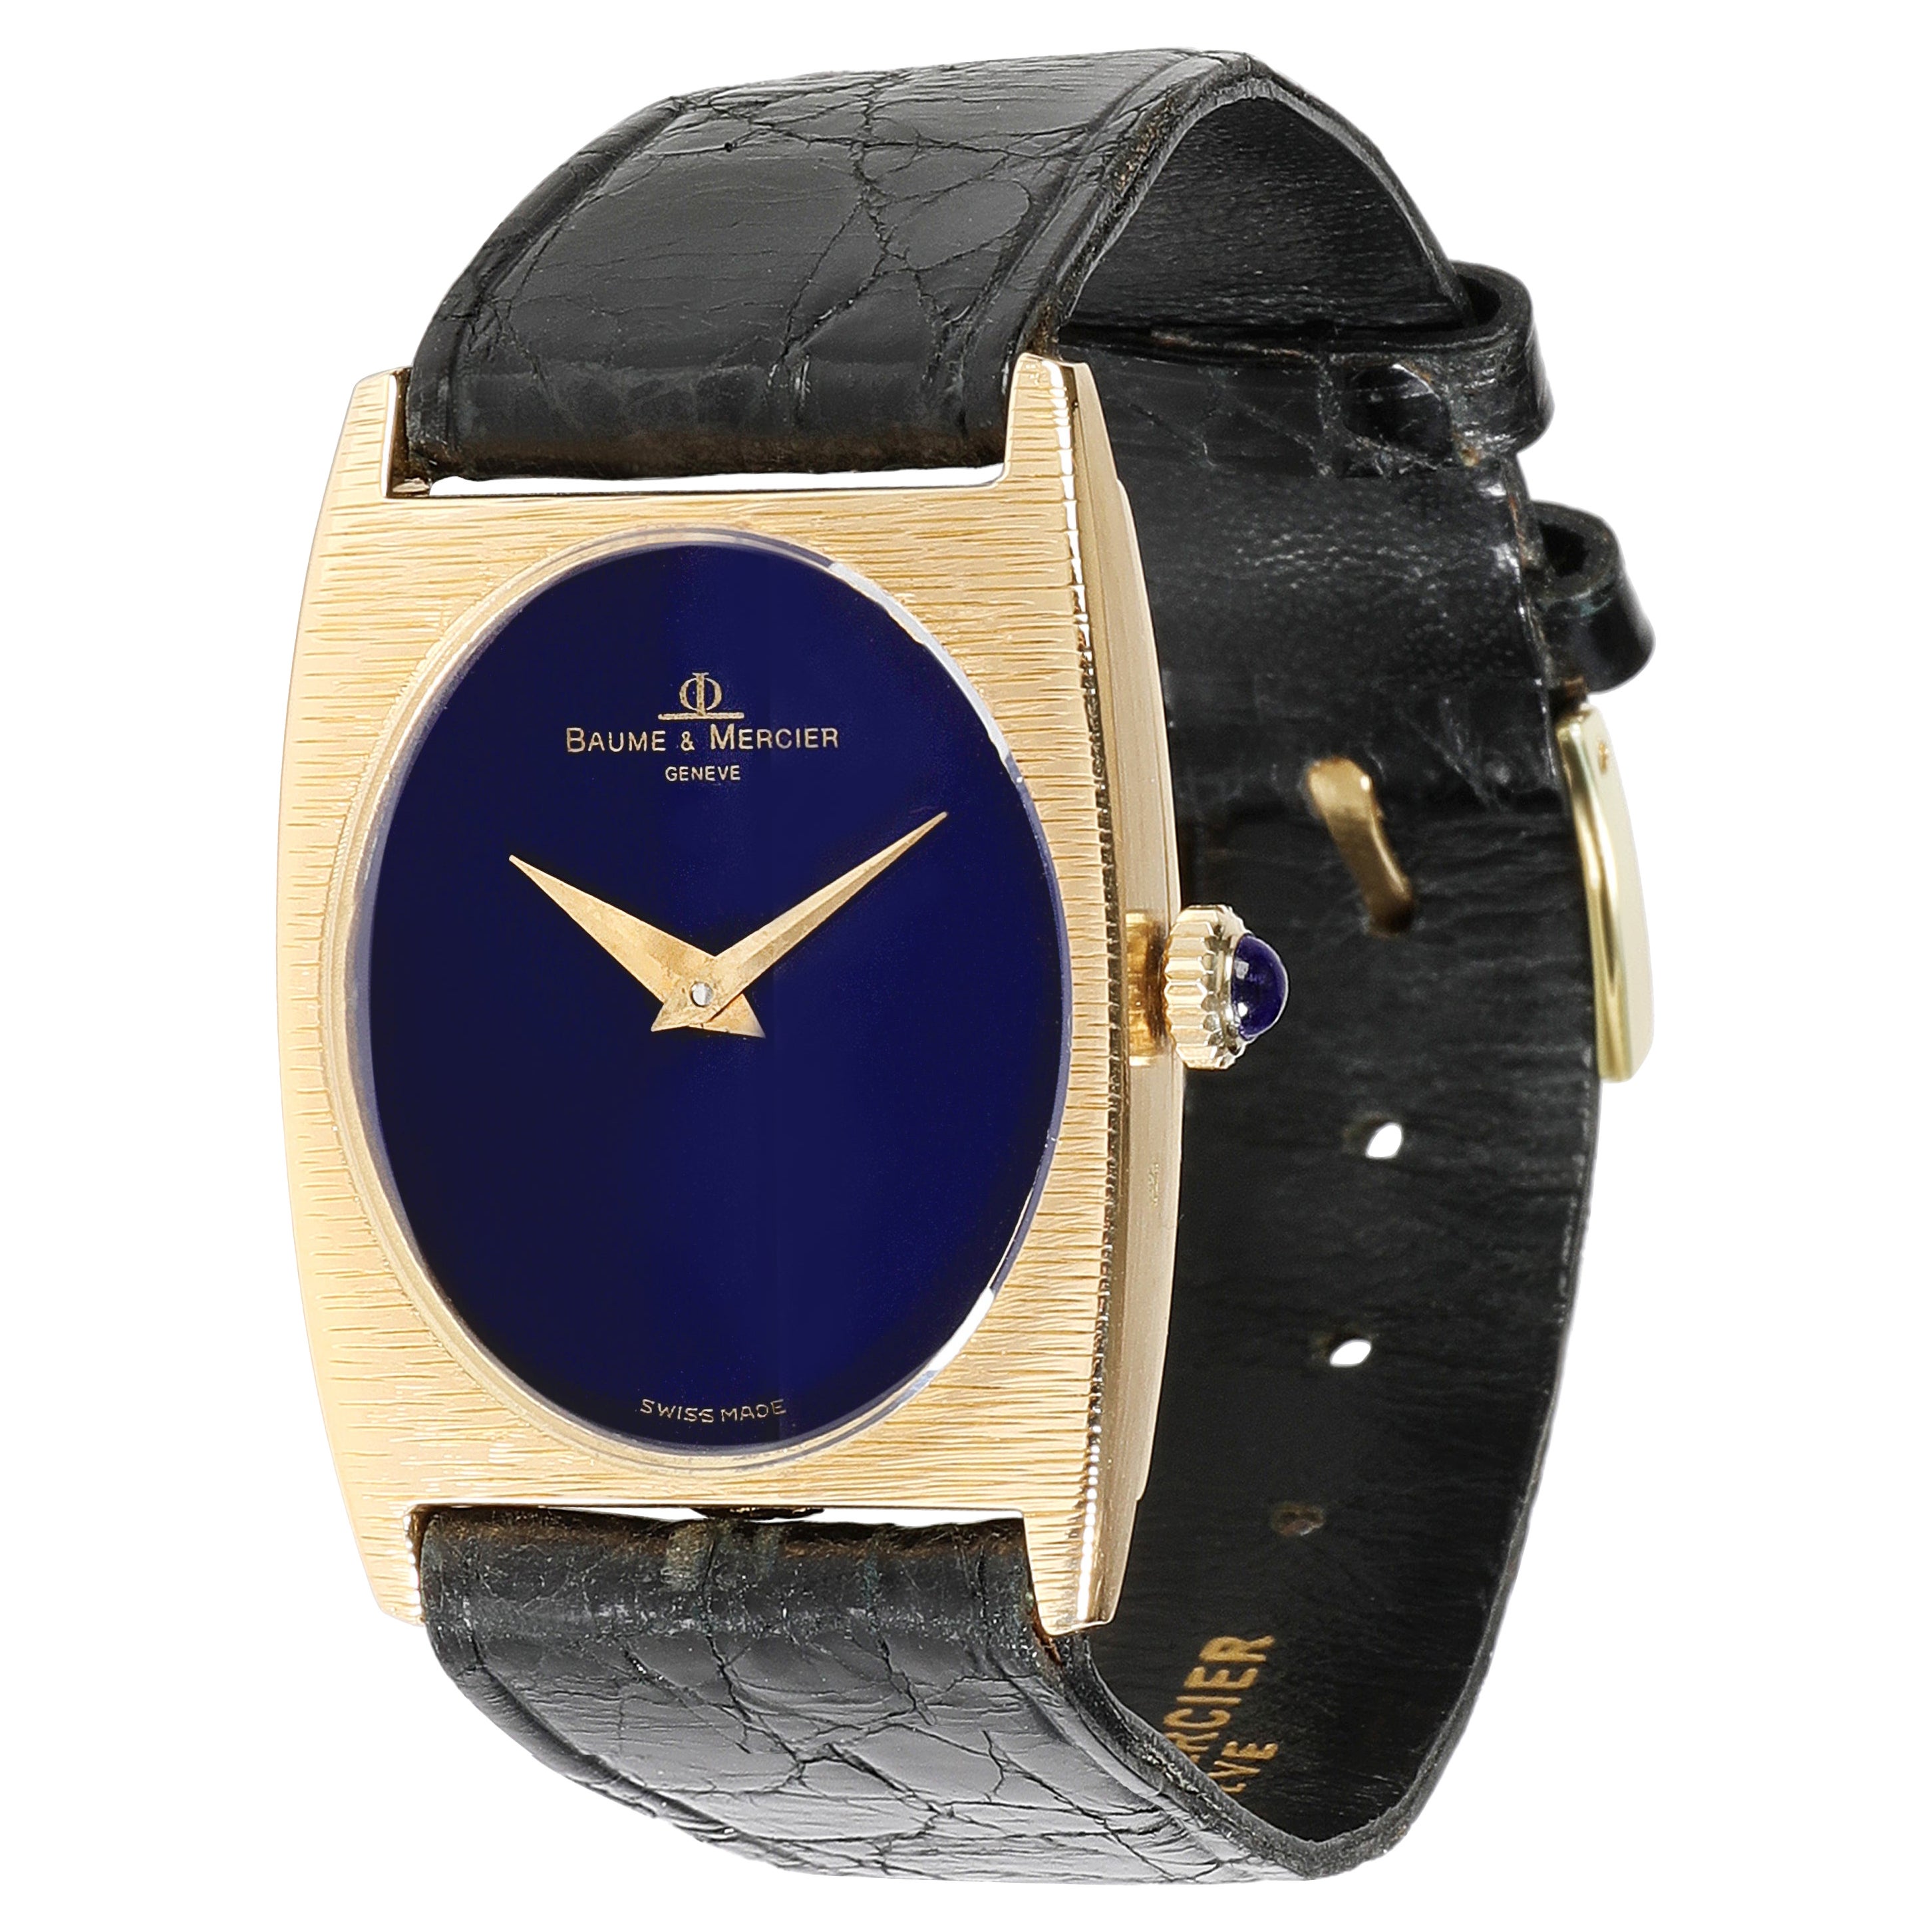 Baume & Mercier Classique 37073 Women's Watch in 18kt Yellow Gold